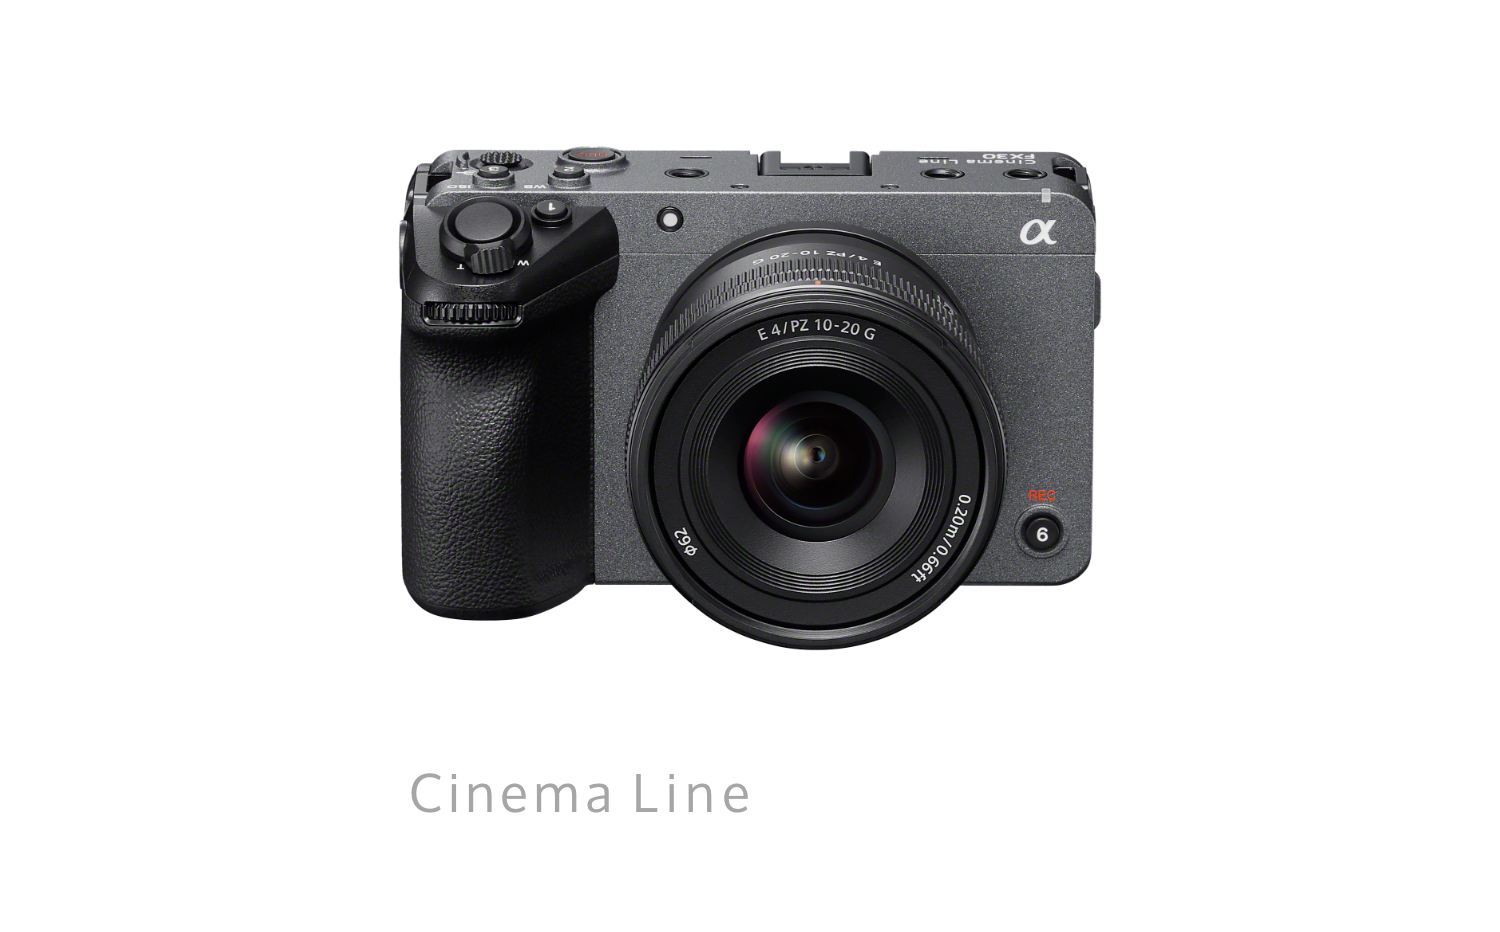 Cinema Line FX30